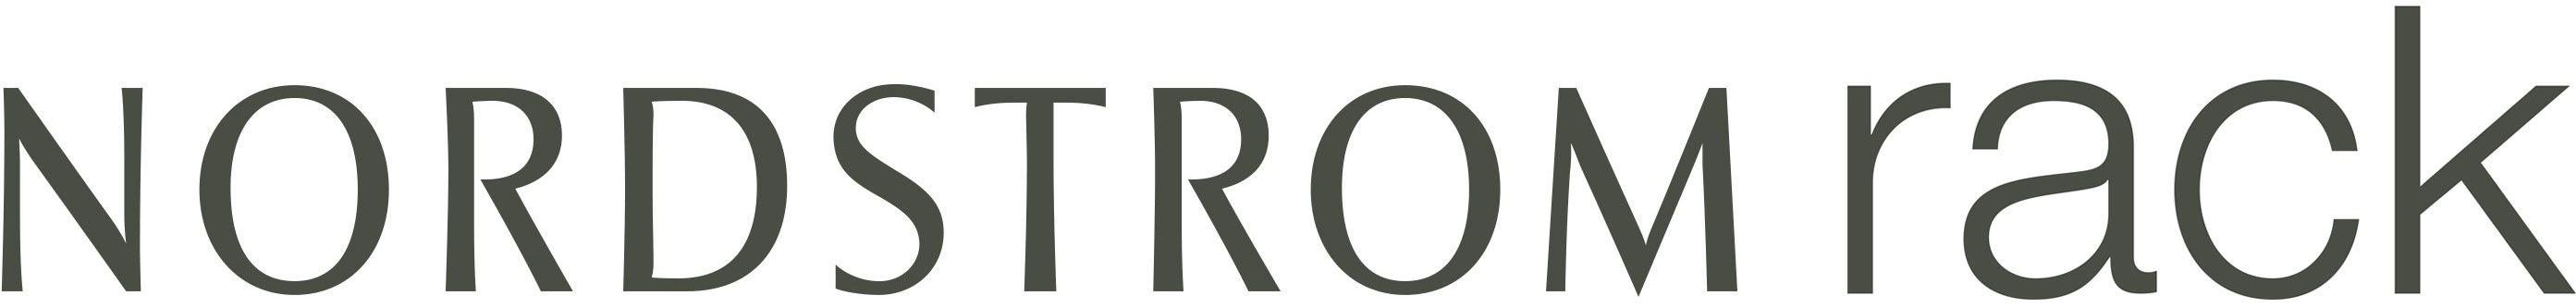 Nordstrom Rack Logo - Nordstrom Rack Affiliate Program